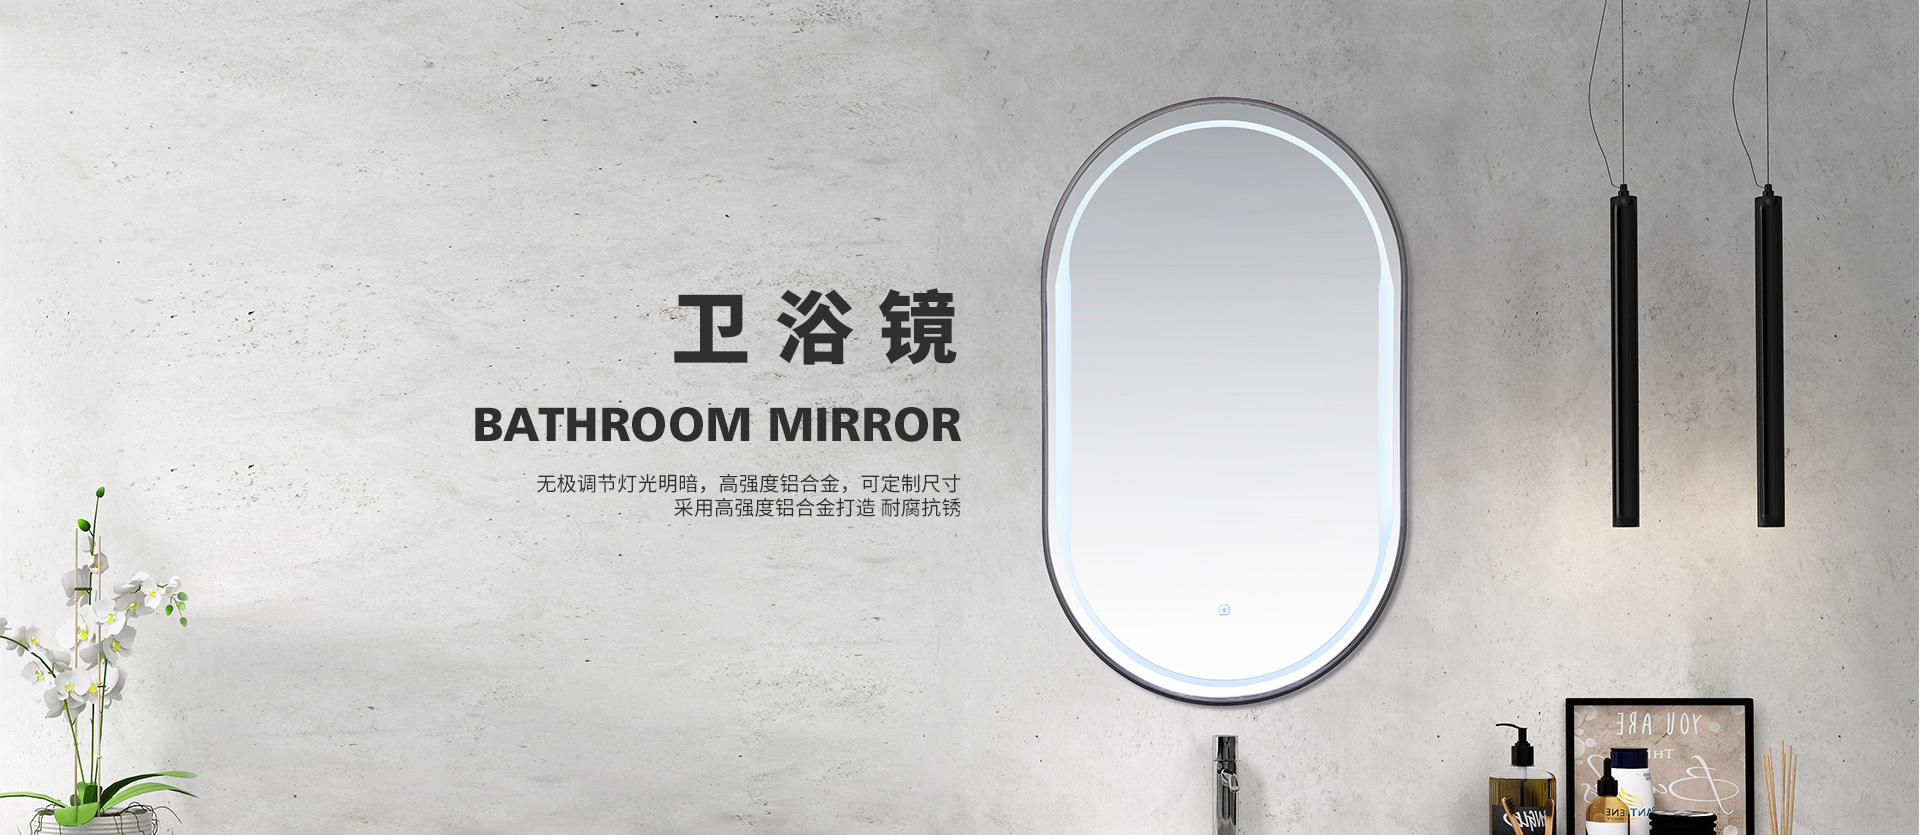 浴室镜,智能浴室镜,梳妆镜